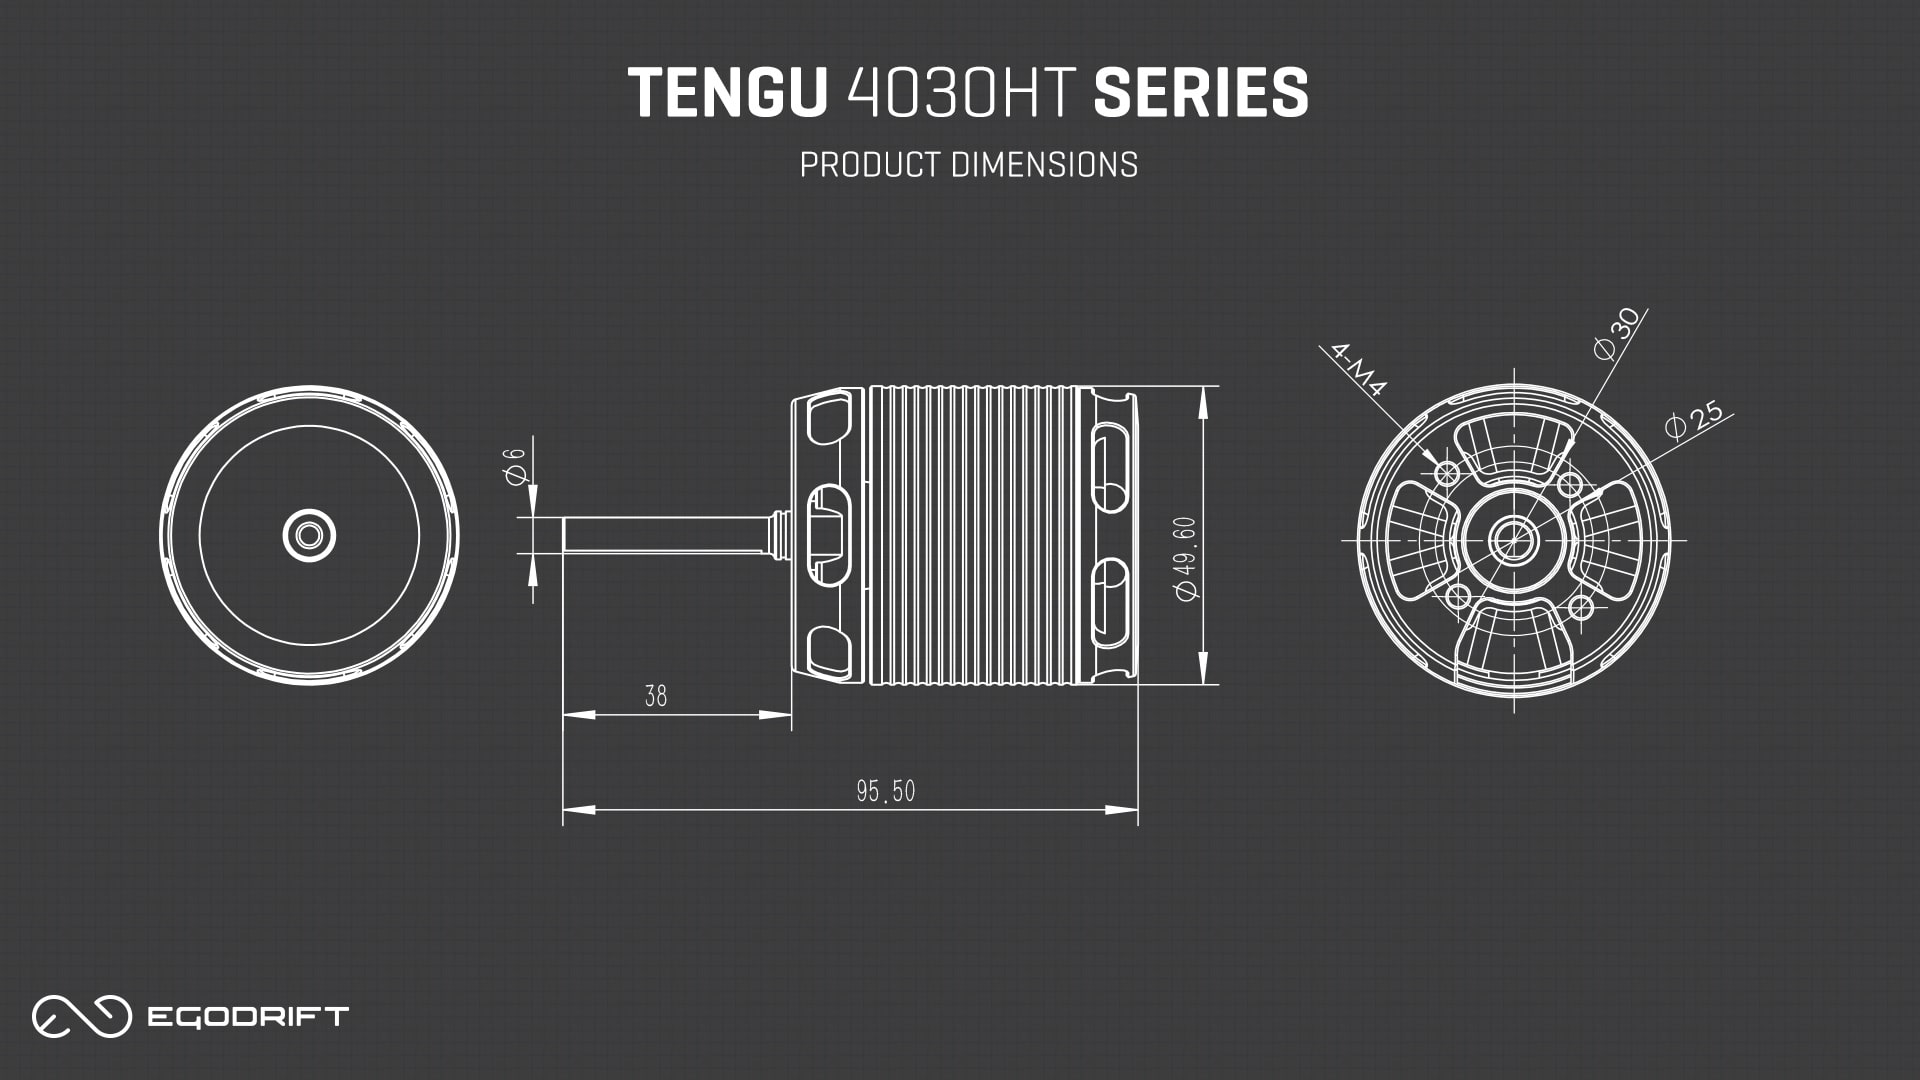 EGODRIFT Tengu 4030HT Series Product Dimensions